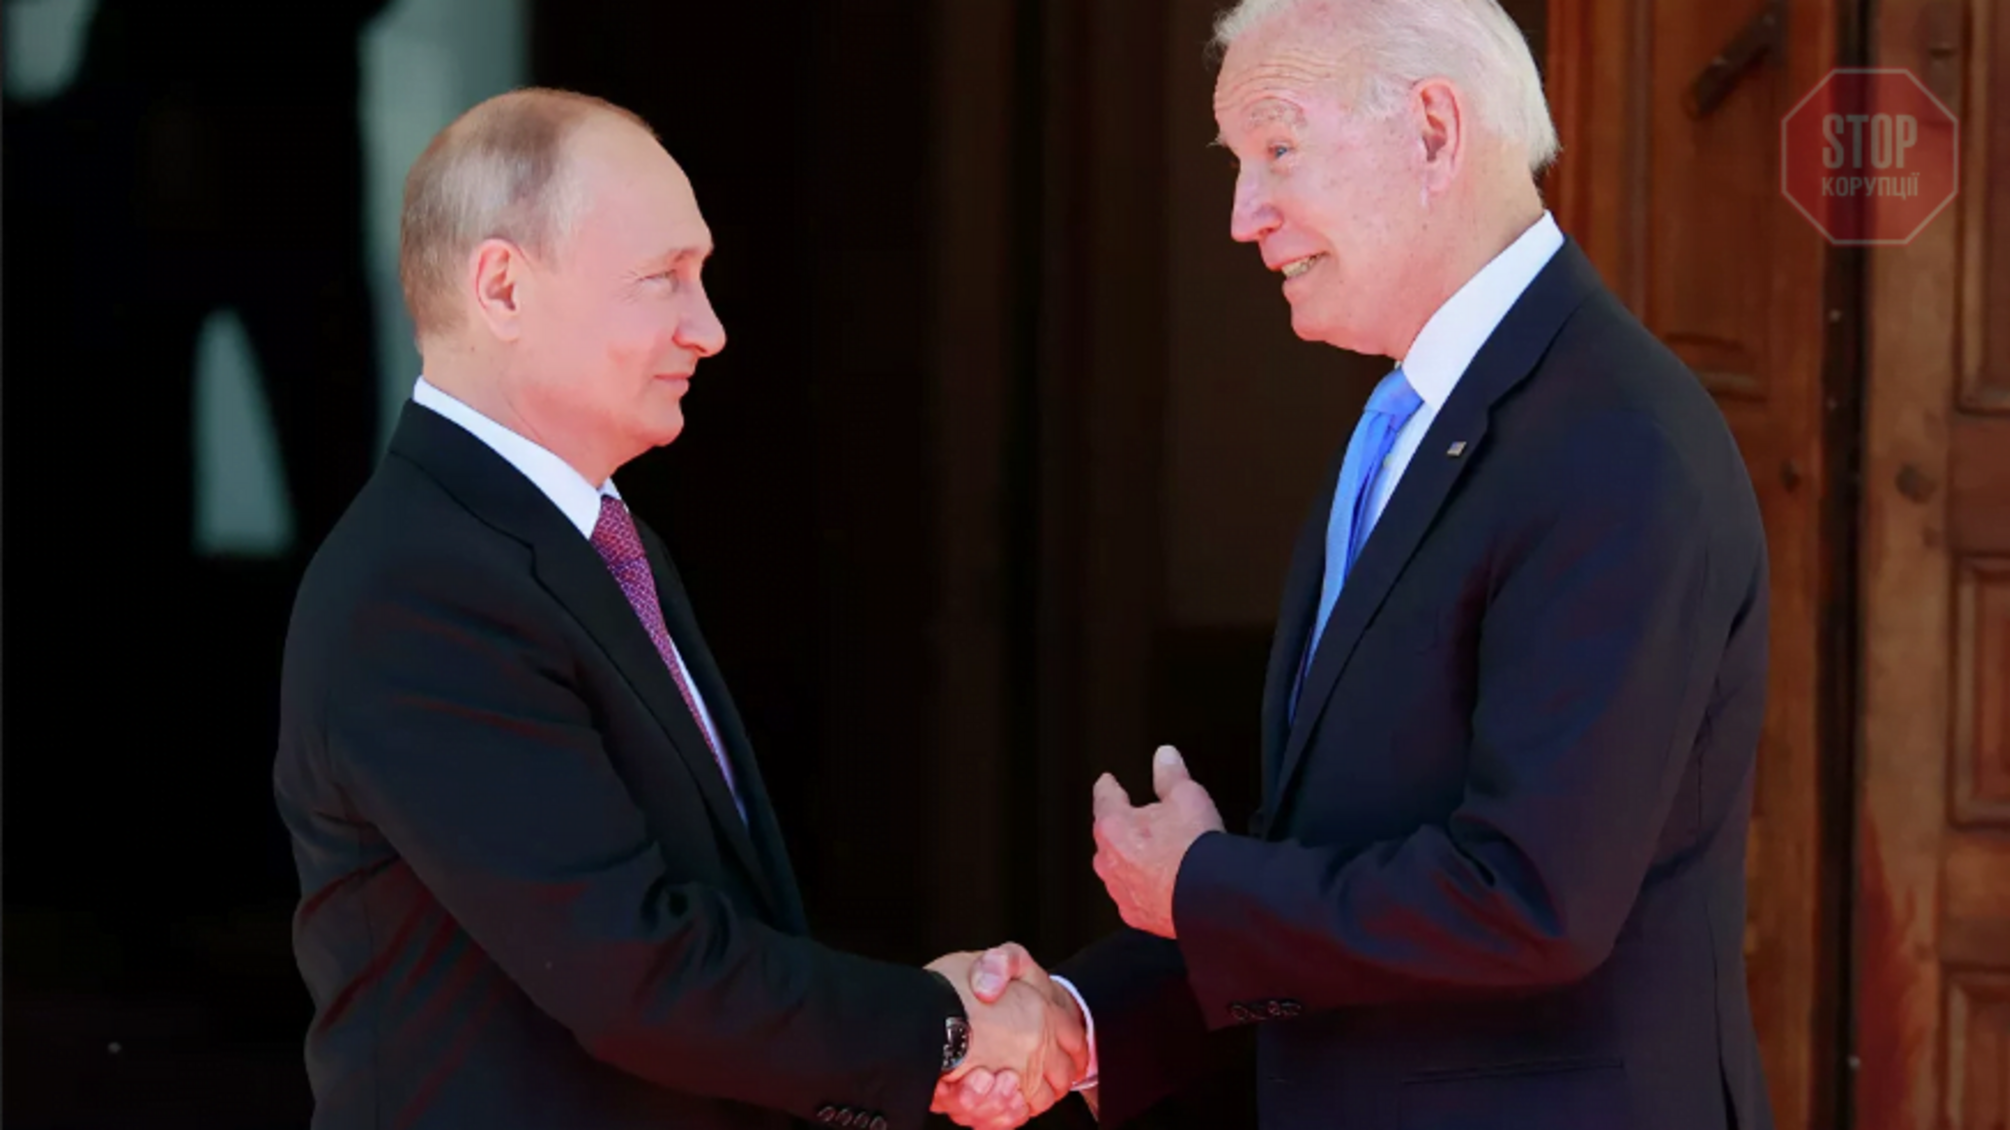 Зустріч Путіна і Байдена: про що говорили президенти